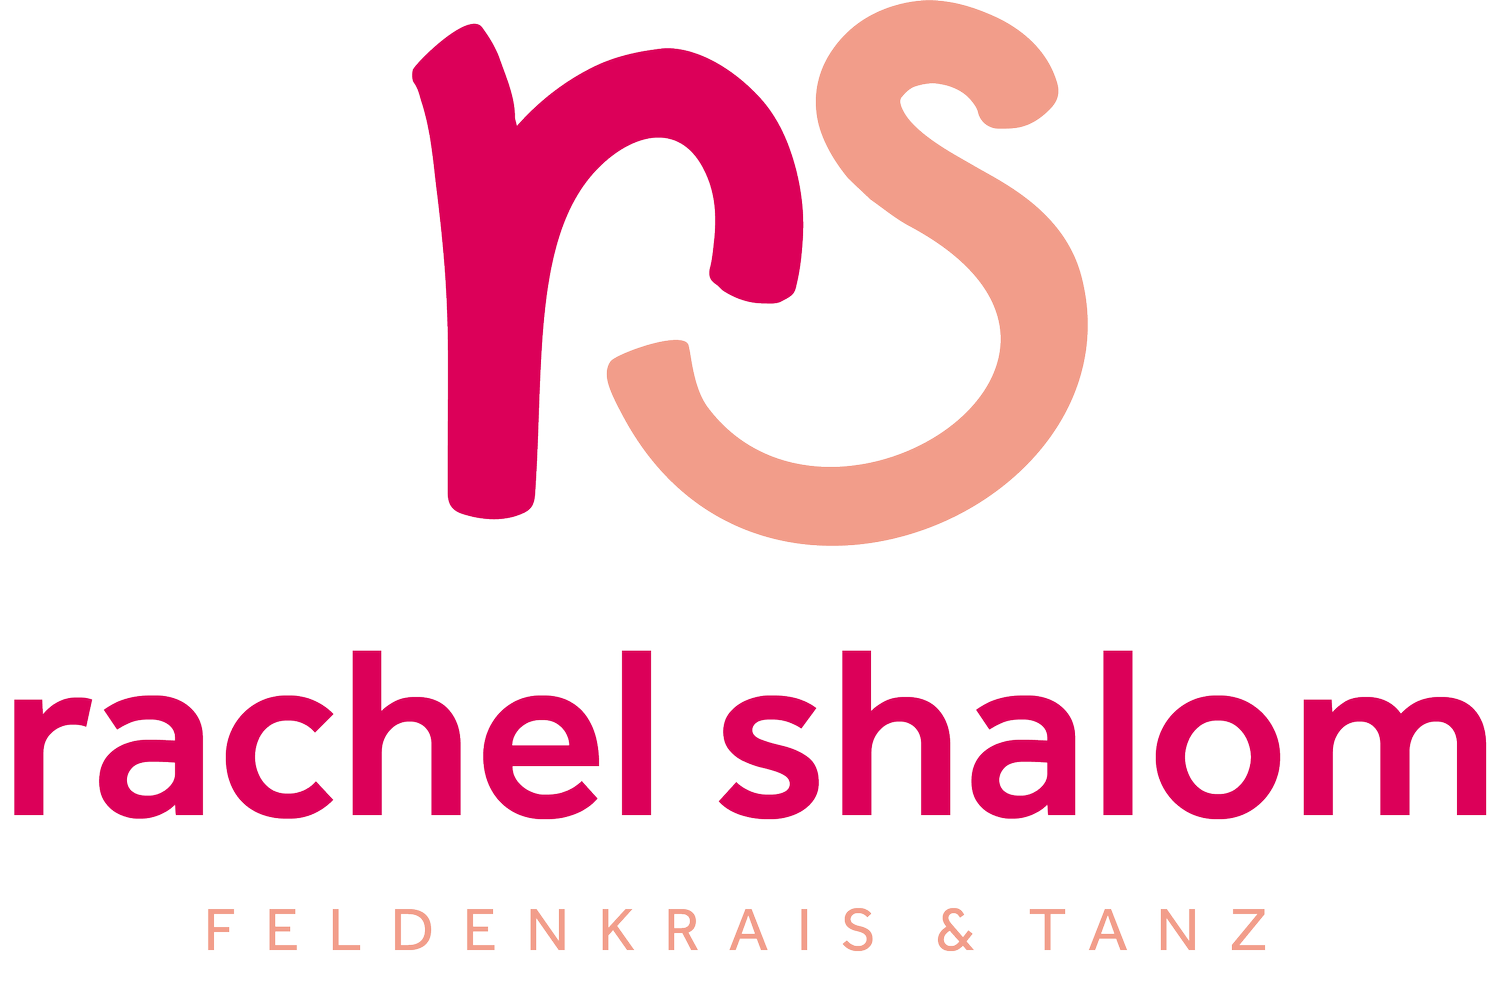 rachel shalom